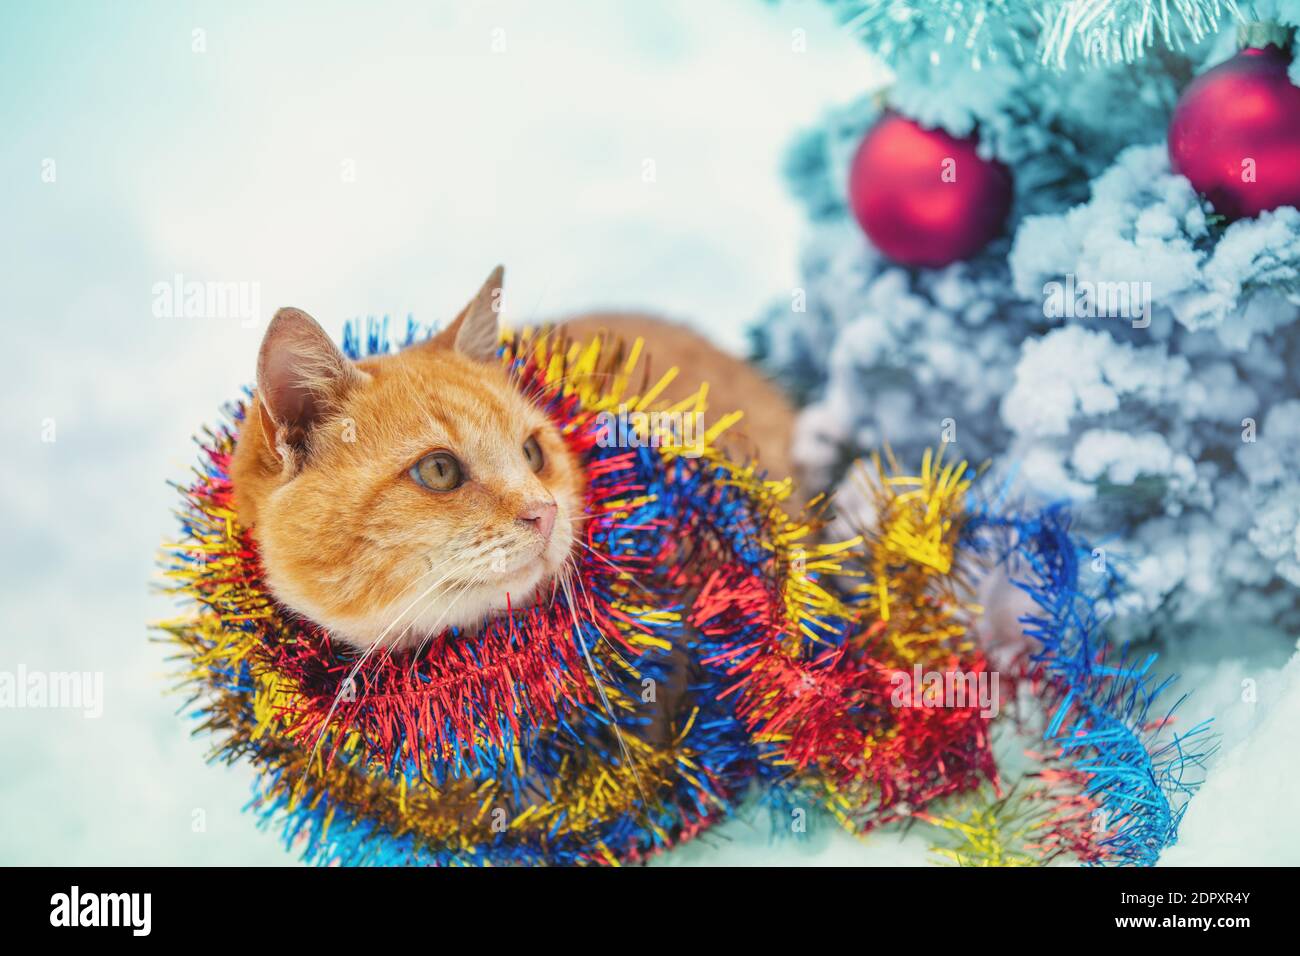 Un drôle de chat de gingembre ludique, enveloppé dans une serpentine, se trouve à l'extérieur en hiver dans la neige près d'un épicéa Banque D'Images